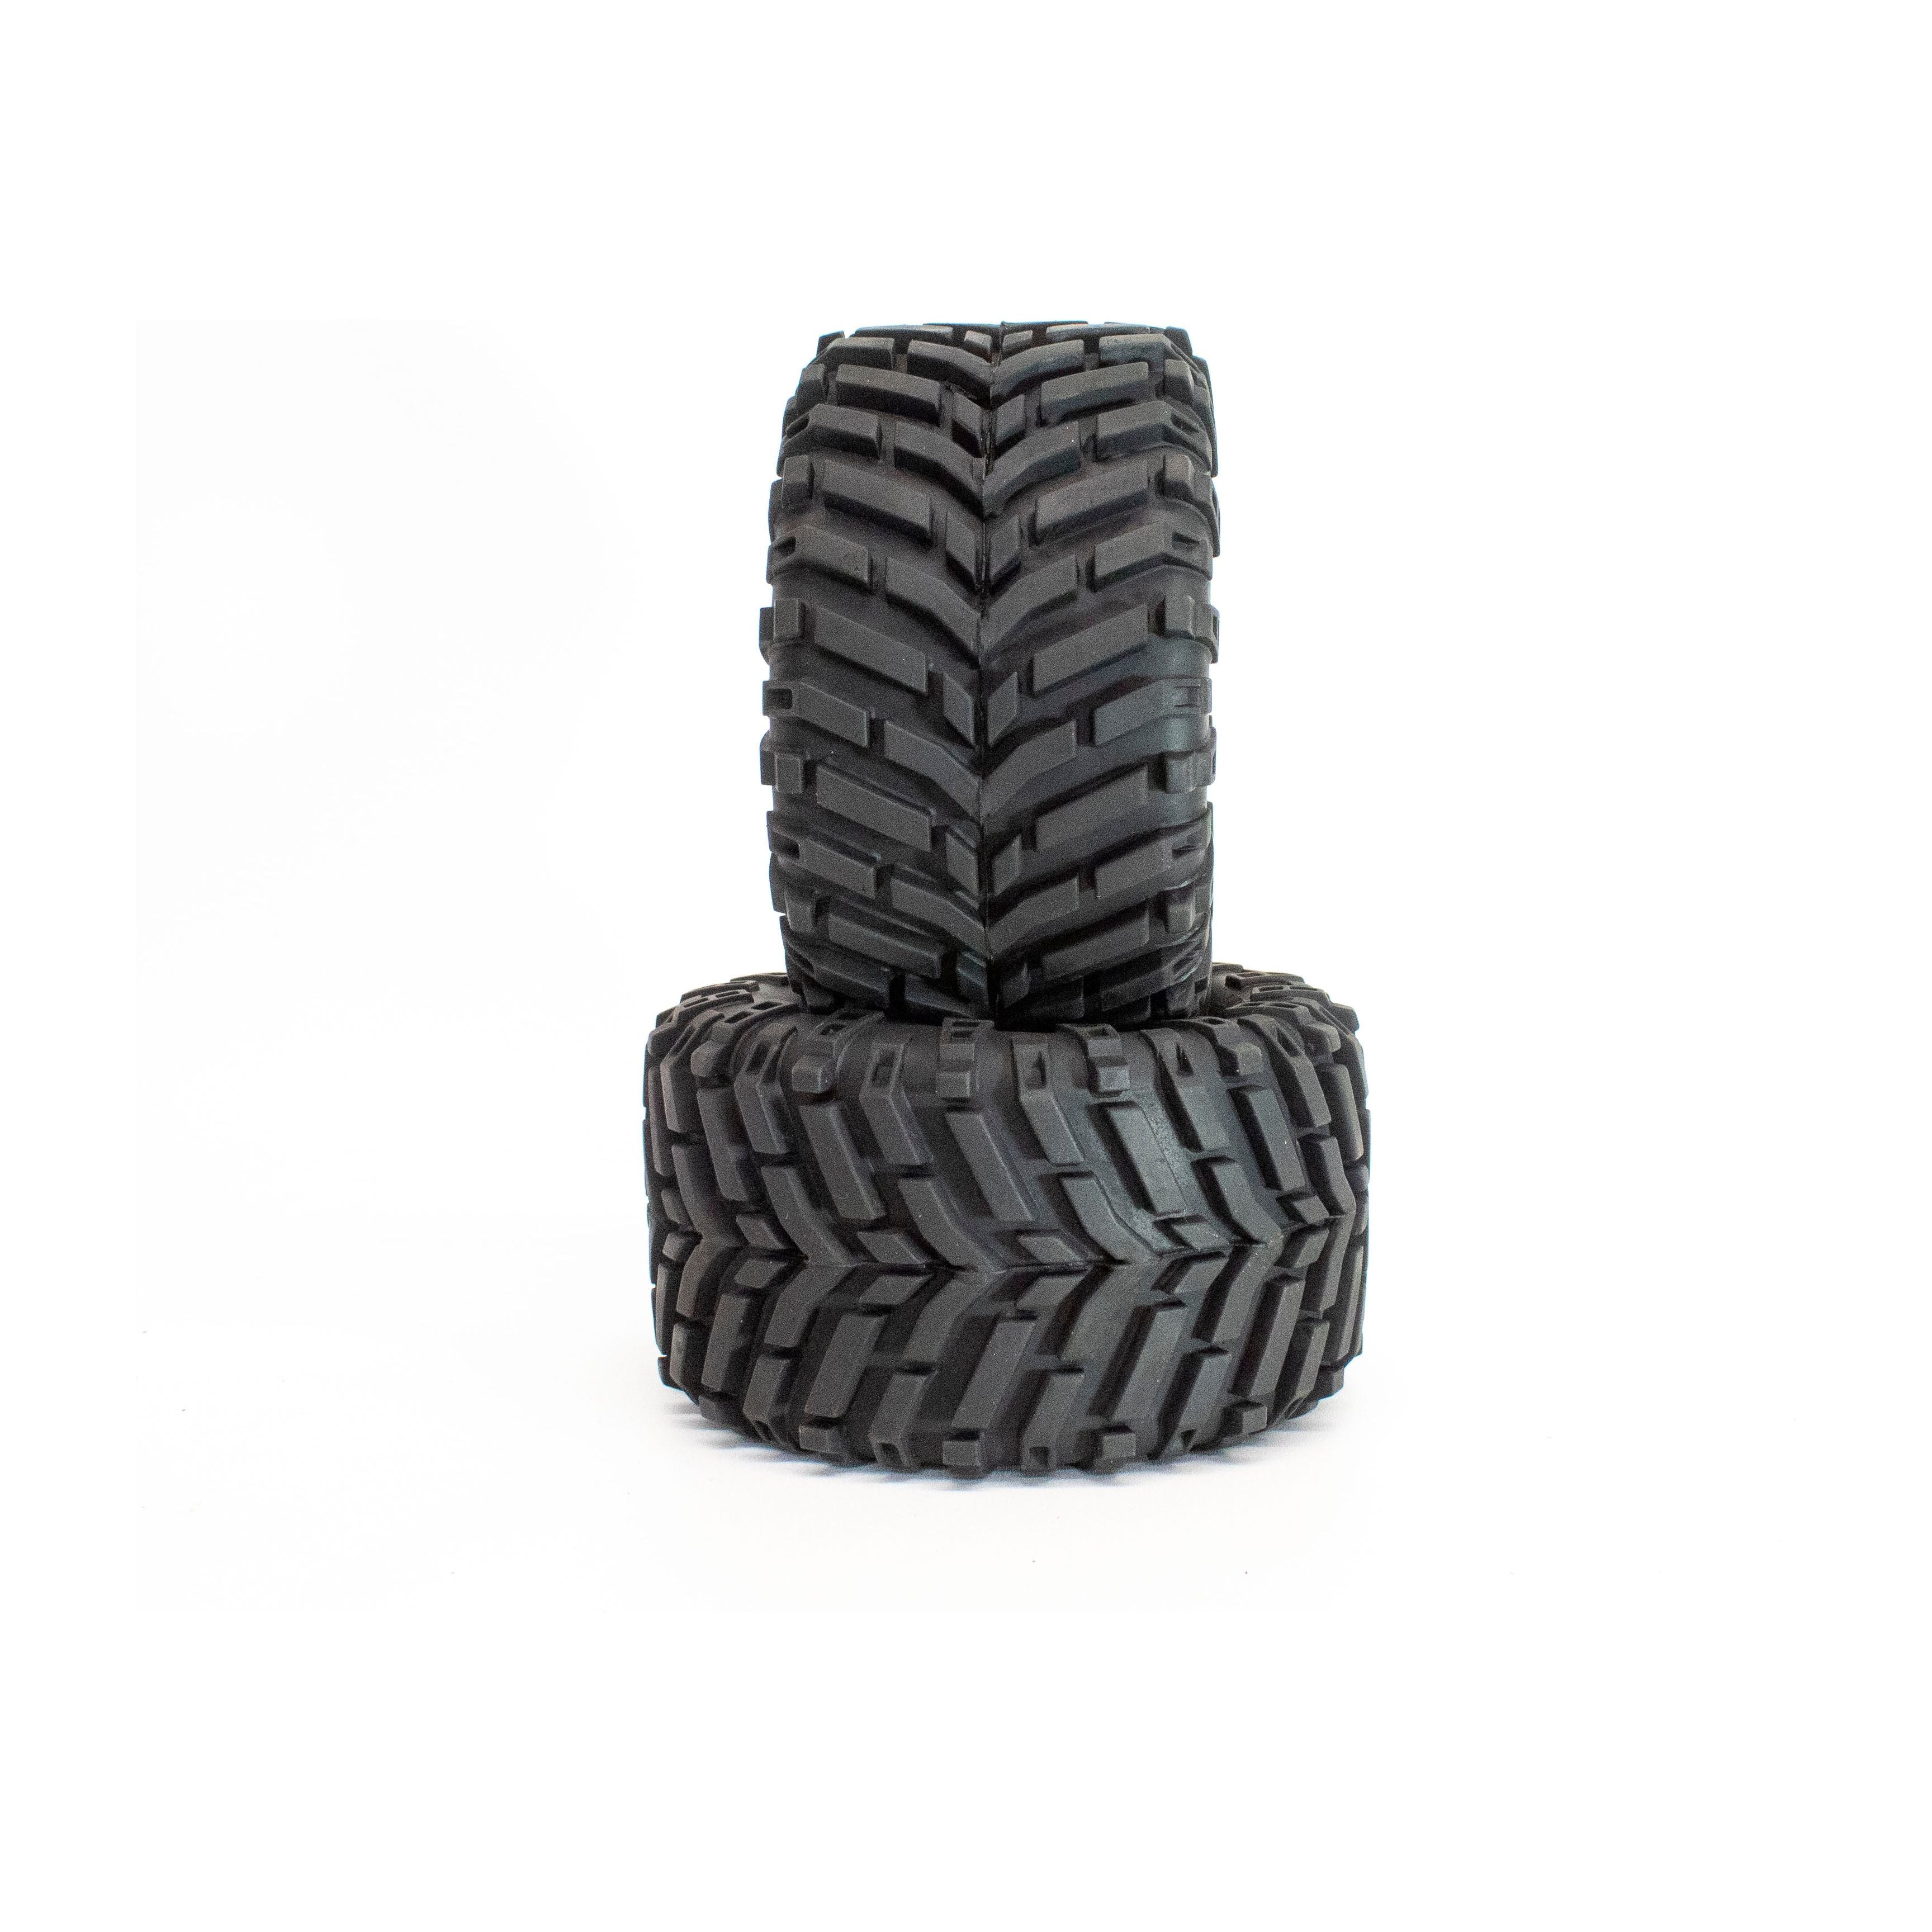 IMEX 2.8 Baja Wide Tires (1 Pair)